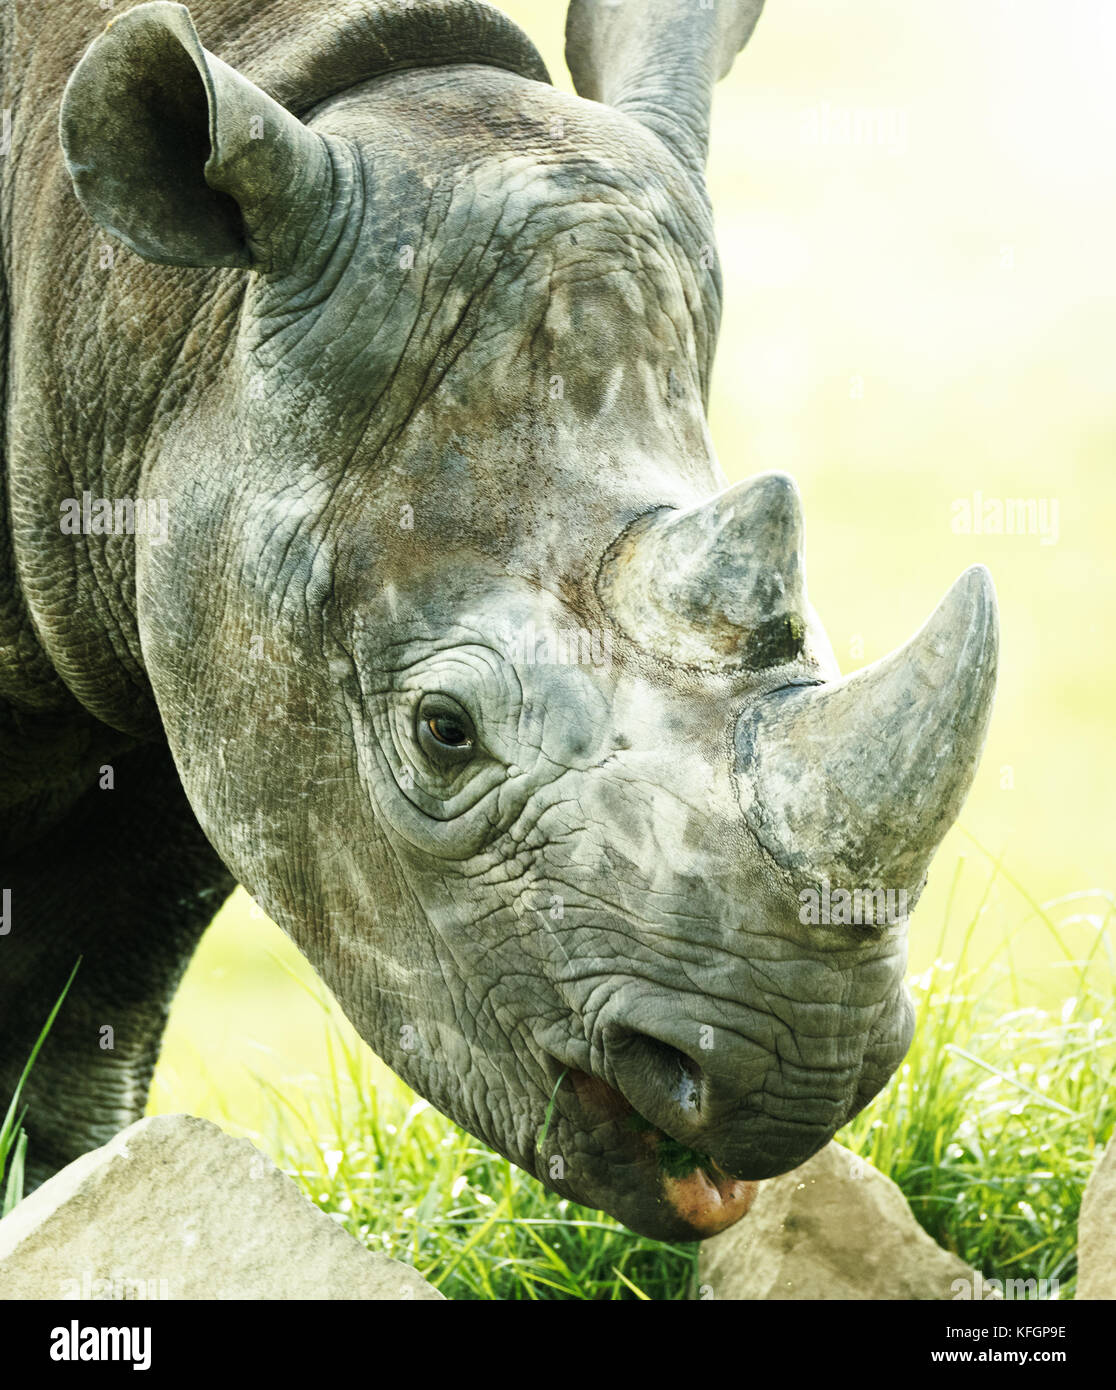 Rhino comer primer plano Foto de stock